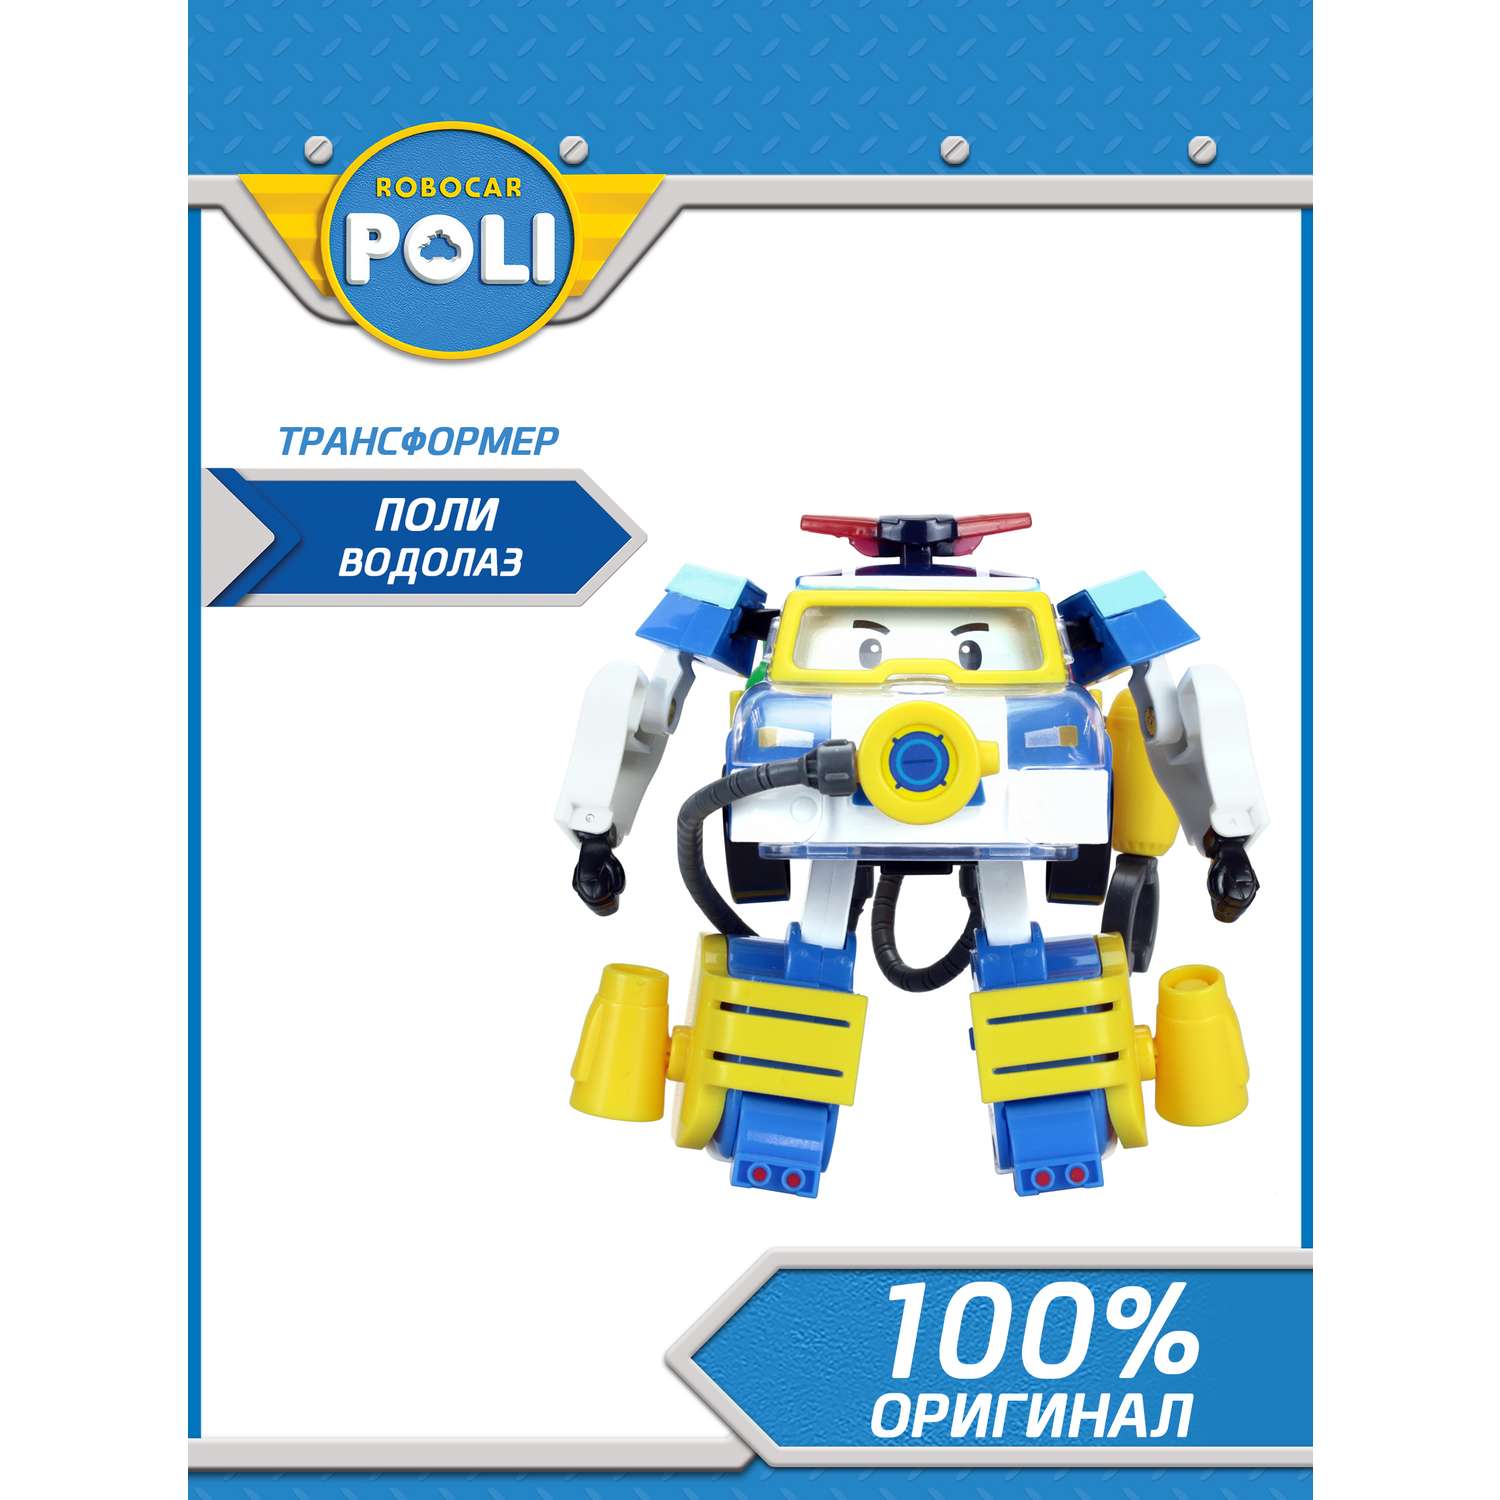 Игрушка POLI Поли трансформер 10 см + костюм водолаза - фото 2